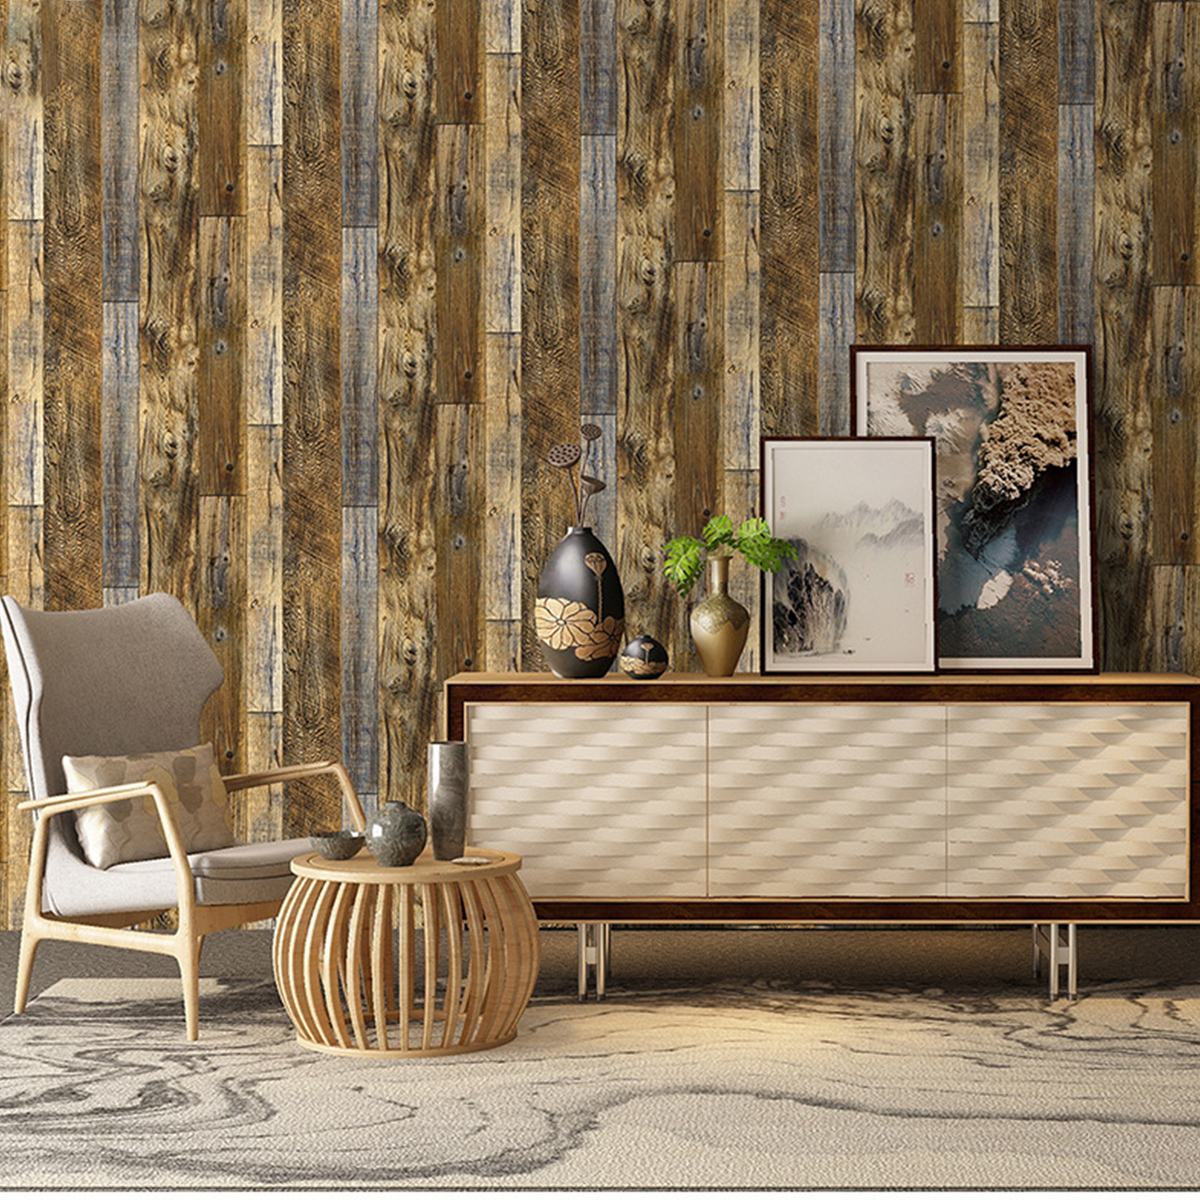 6m Rustic Wood Panel Effect Wallpaper Self Adhesive Vinyl Wrap ...